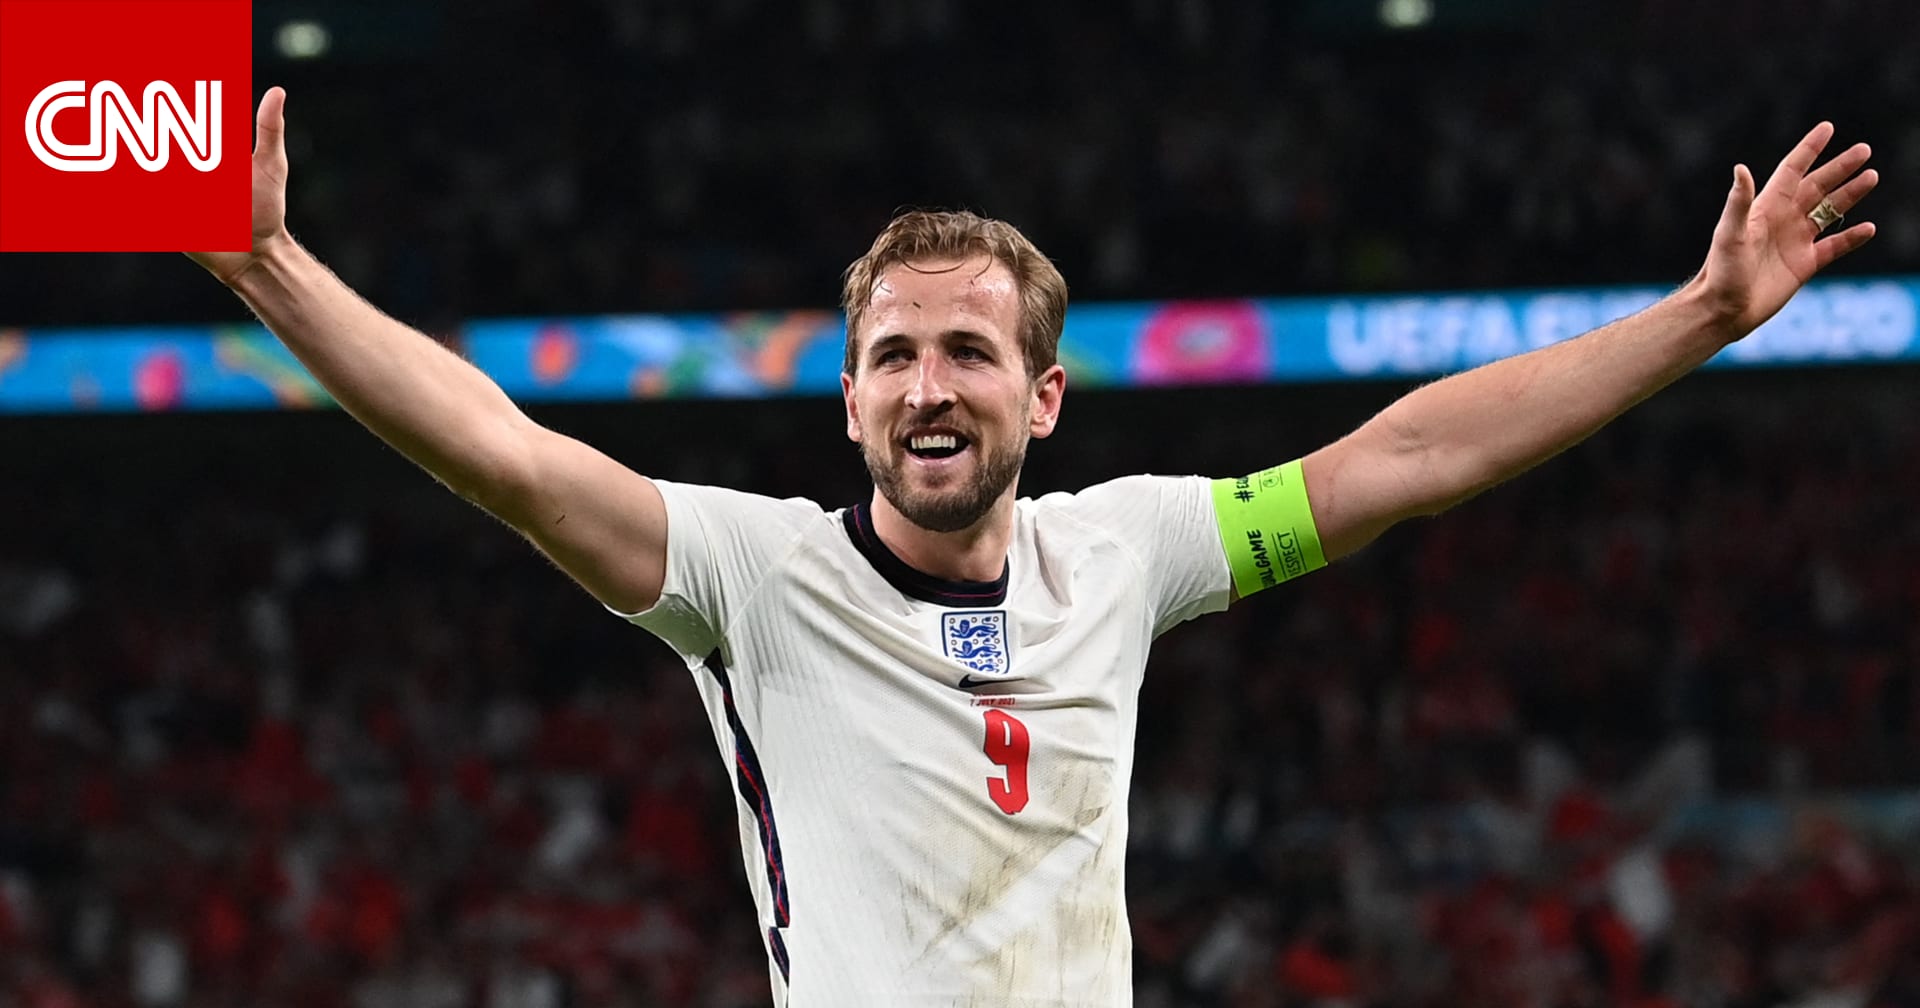 إنجلترا تتأهل إلى نهائي كأس أمم أوروبا بعد الفوز على الدنمارك في الوقت الإضافي